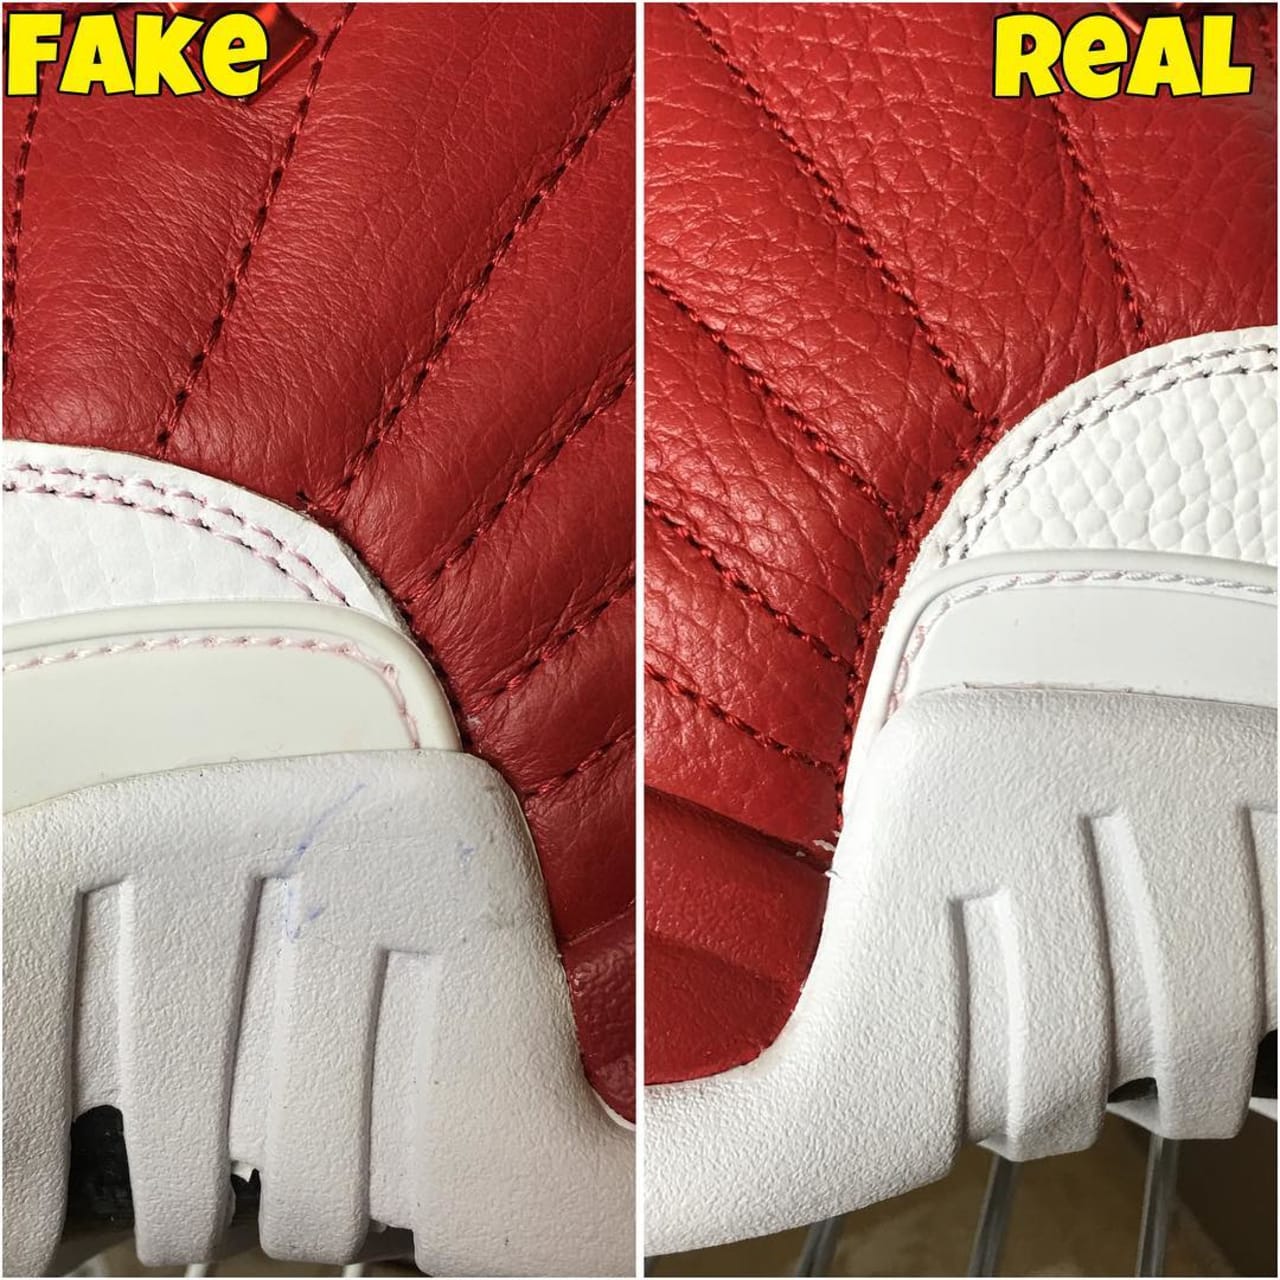 Air Jordan XII 12 Gym Red Real Fake 